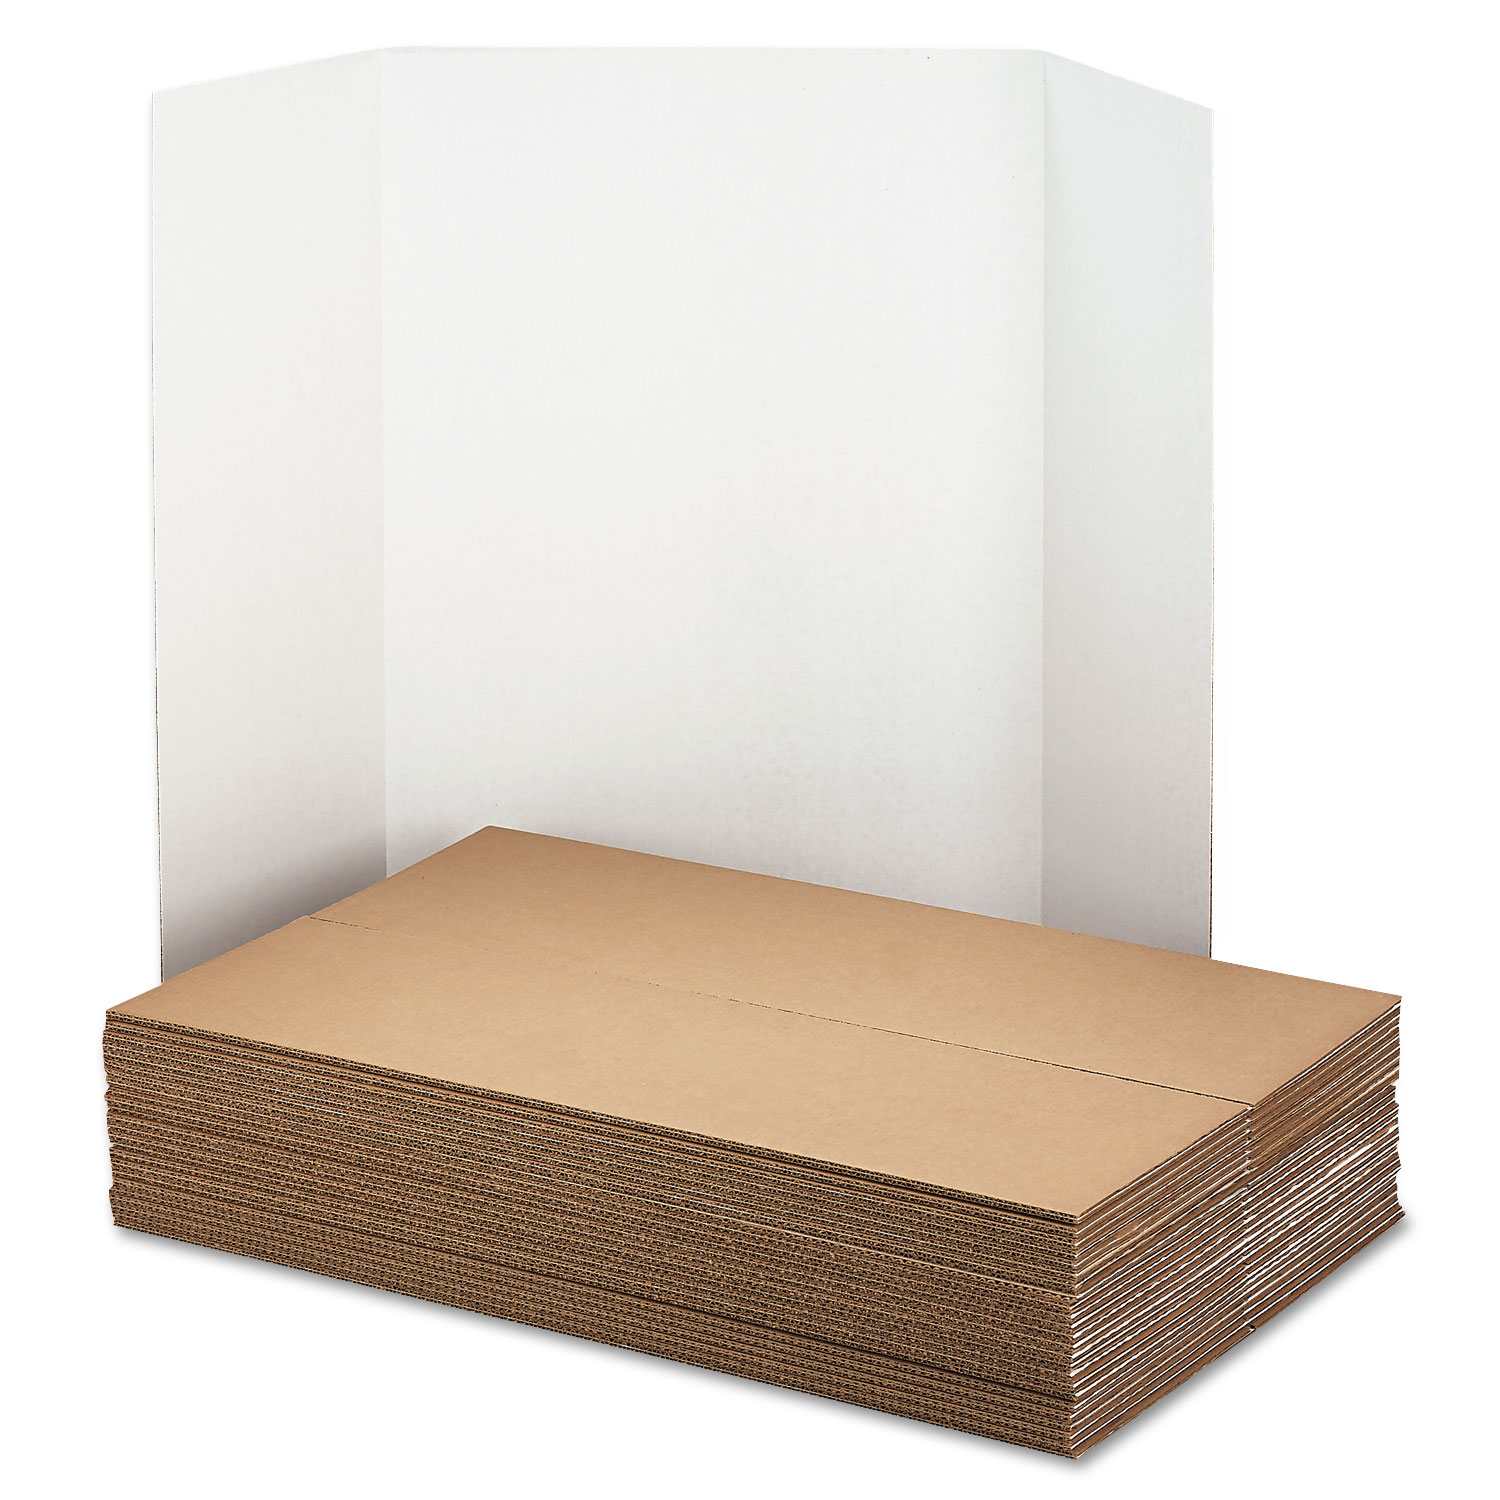 Spotlight Presentation Board, 48 x 36, White, 24/Carton